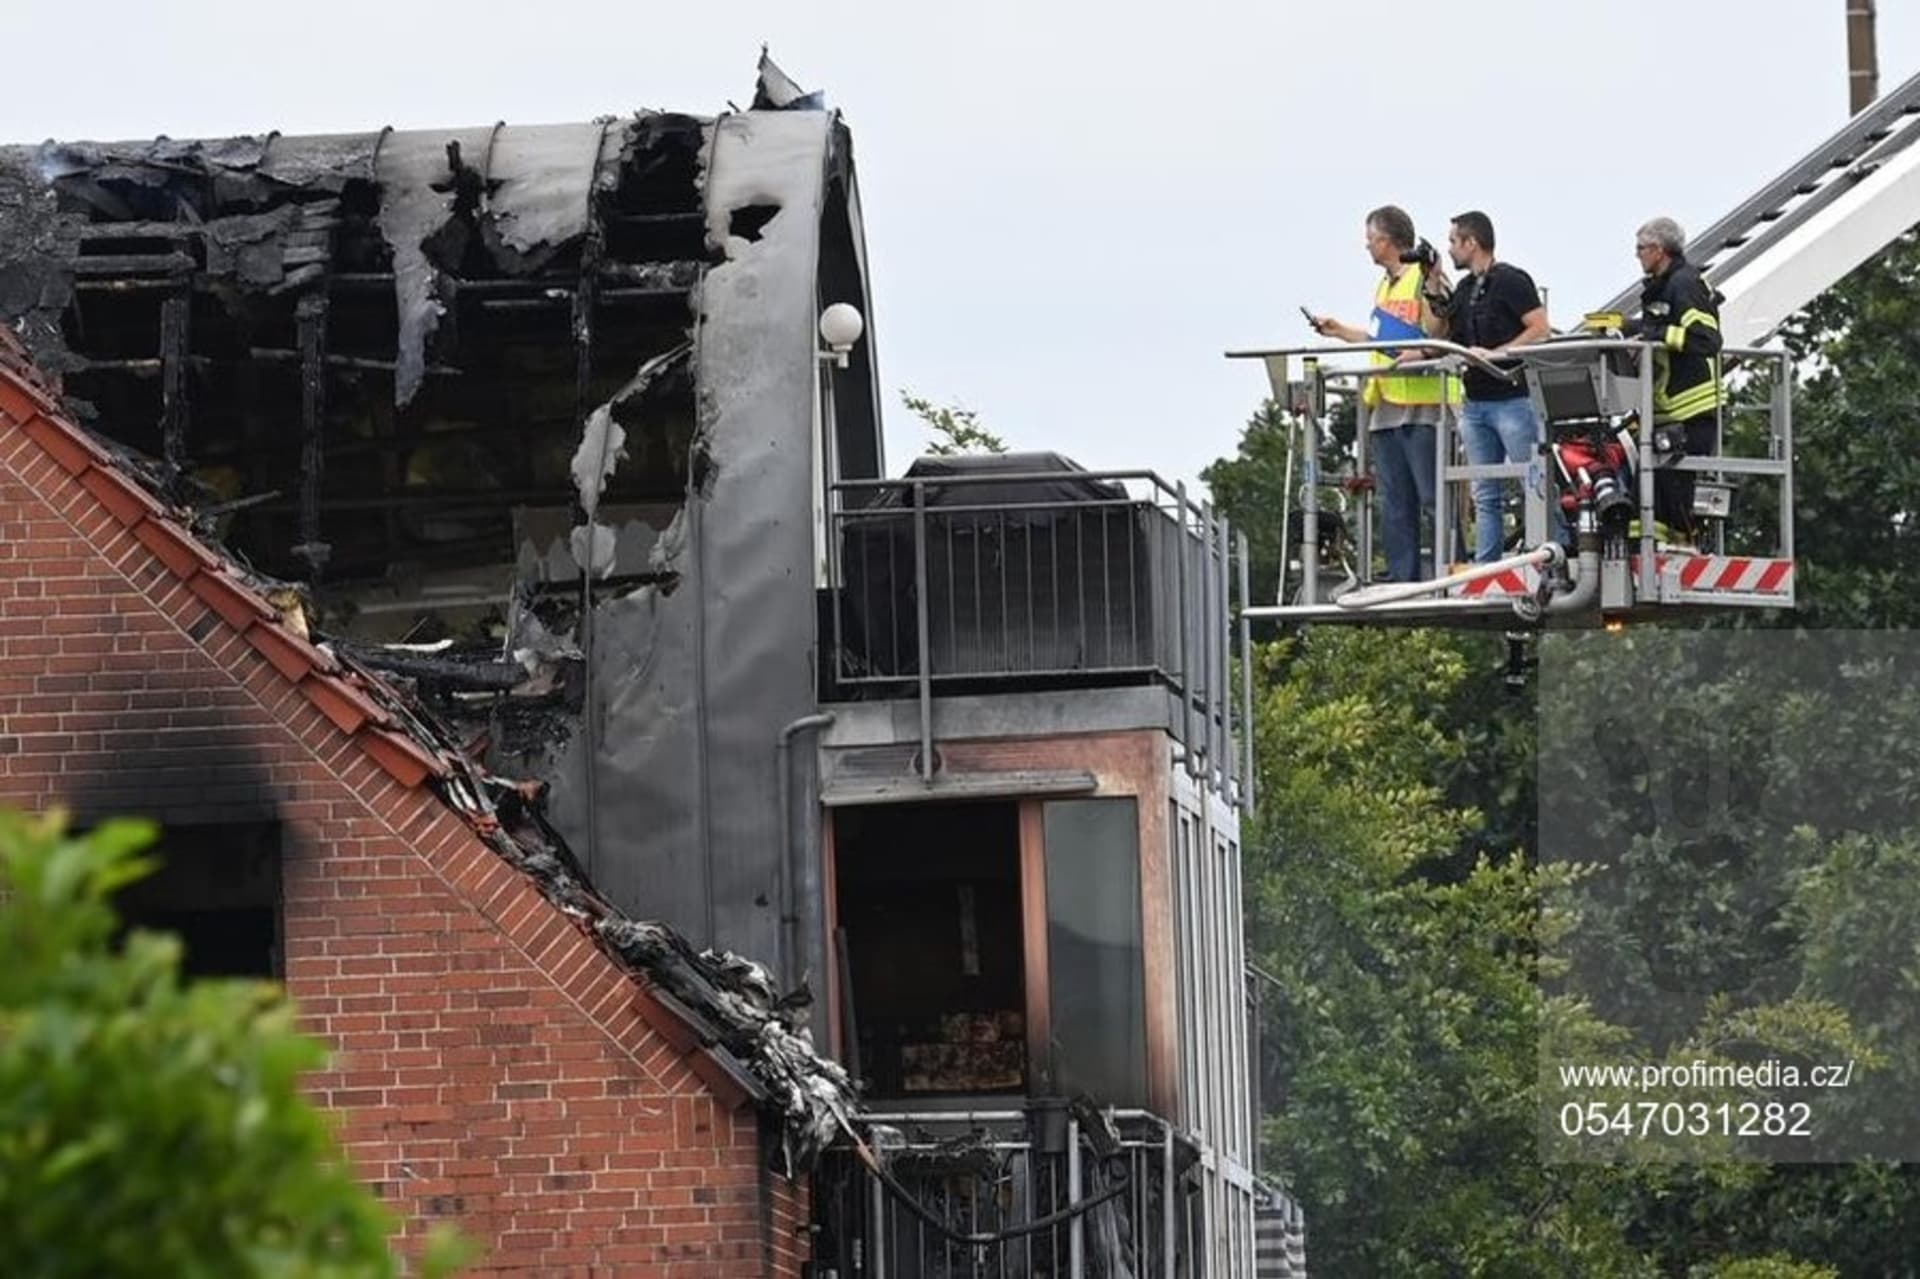 Policisté a experti dokumentují následky havárie, při které spadlo malé ultralehké letadlo na střechu domu v západoněmeckém městě Wesel.